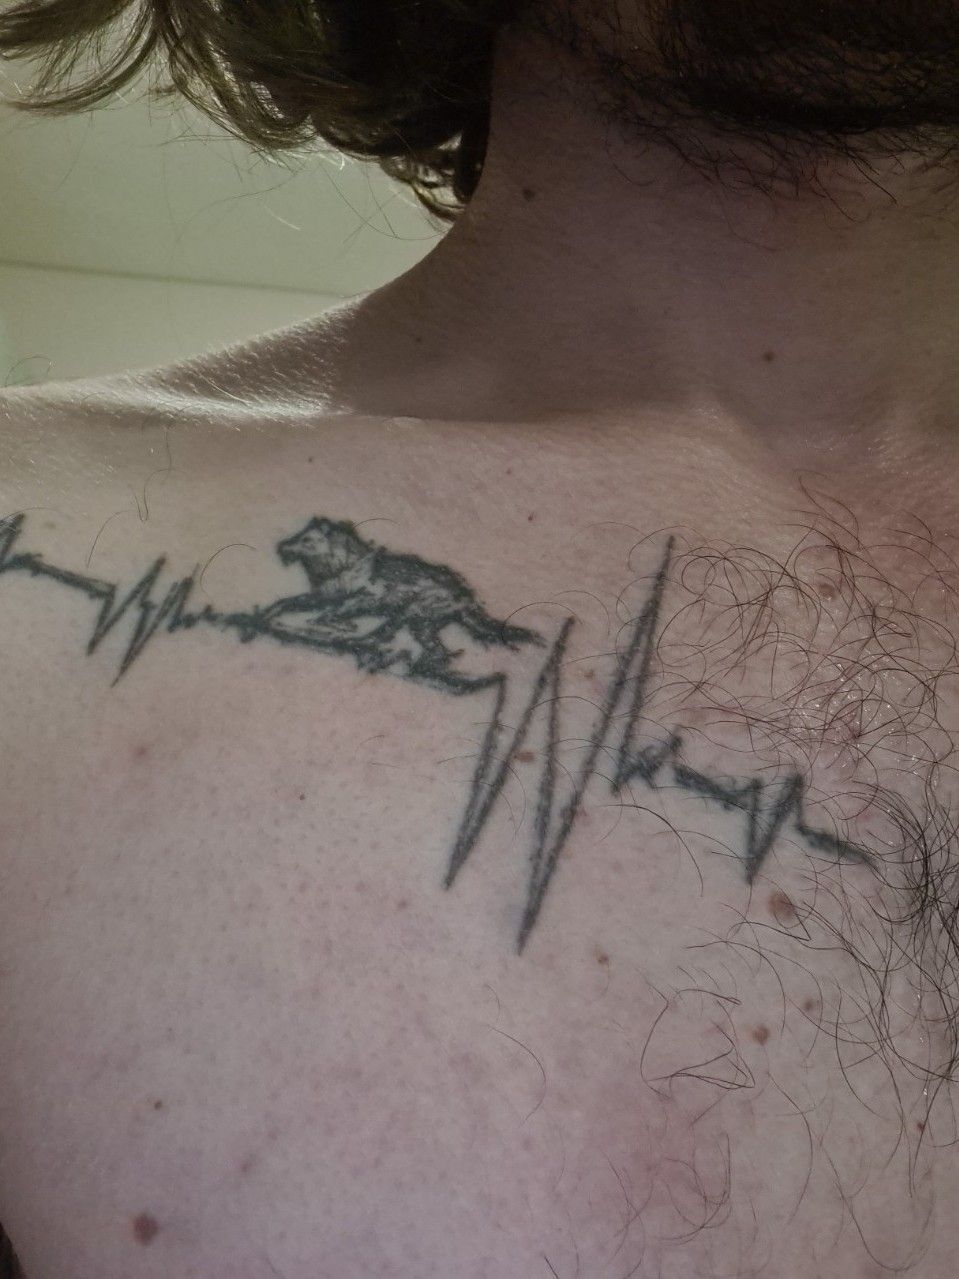 Pin by Siegfried on Tattoos | Bike tattoos, Mechanic tattoo, Small tattoos